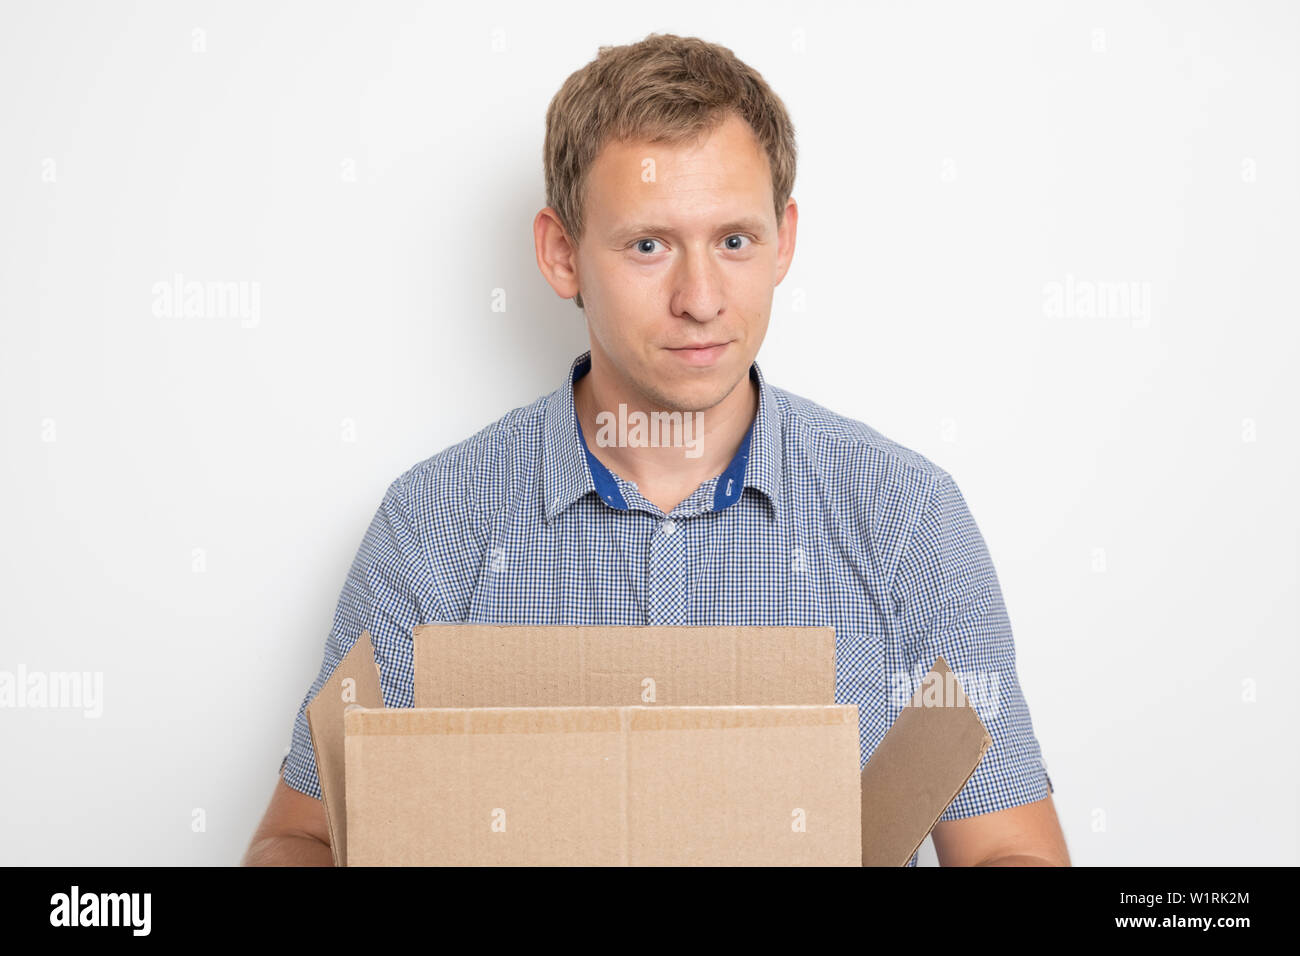 Descripción: un joven apuesto hombre caucásico mantiene abierta una caja de cartón en sus manos y sonrió Foto de stock